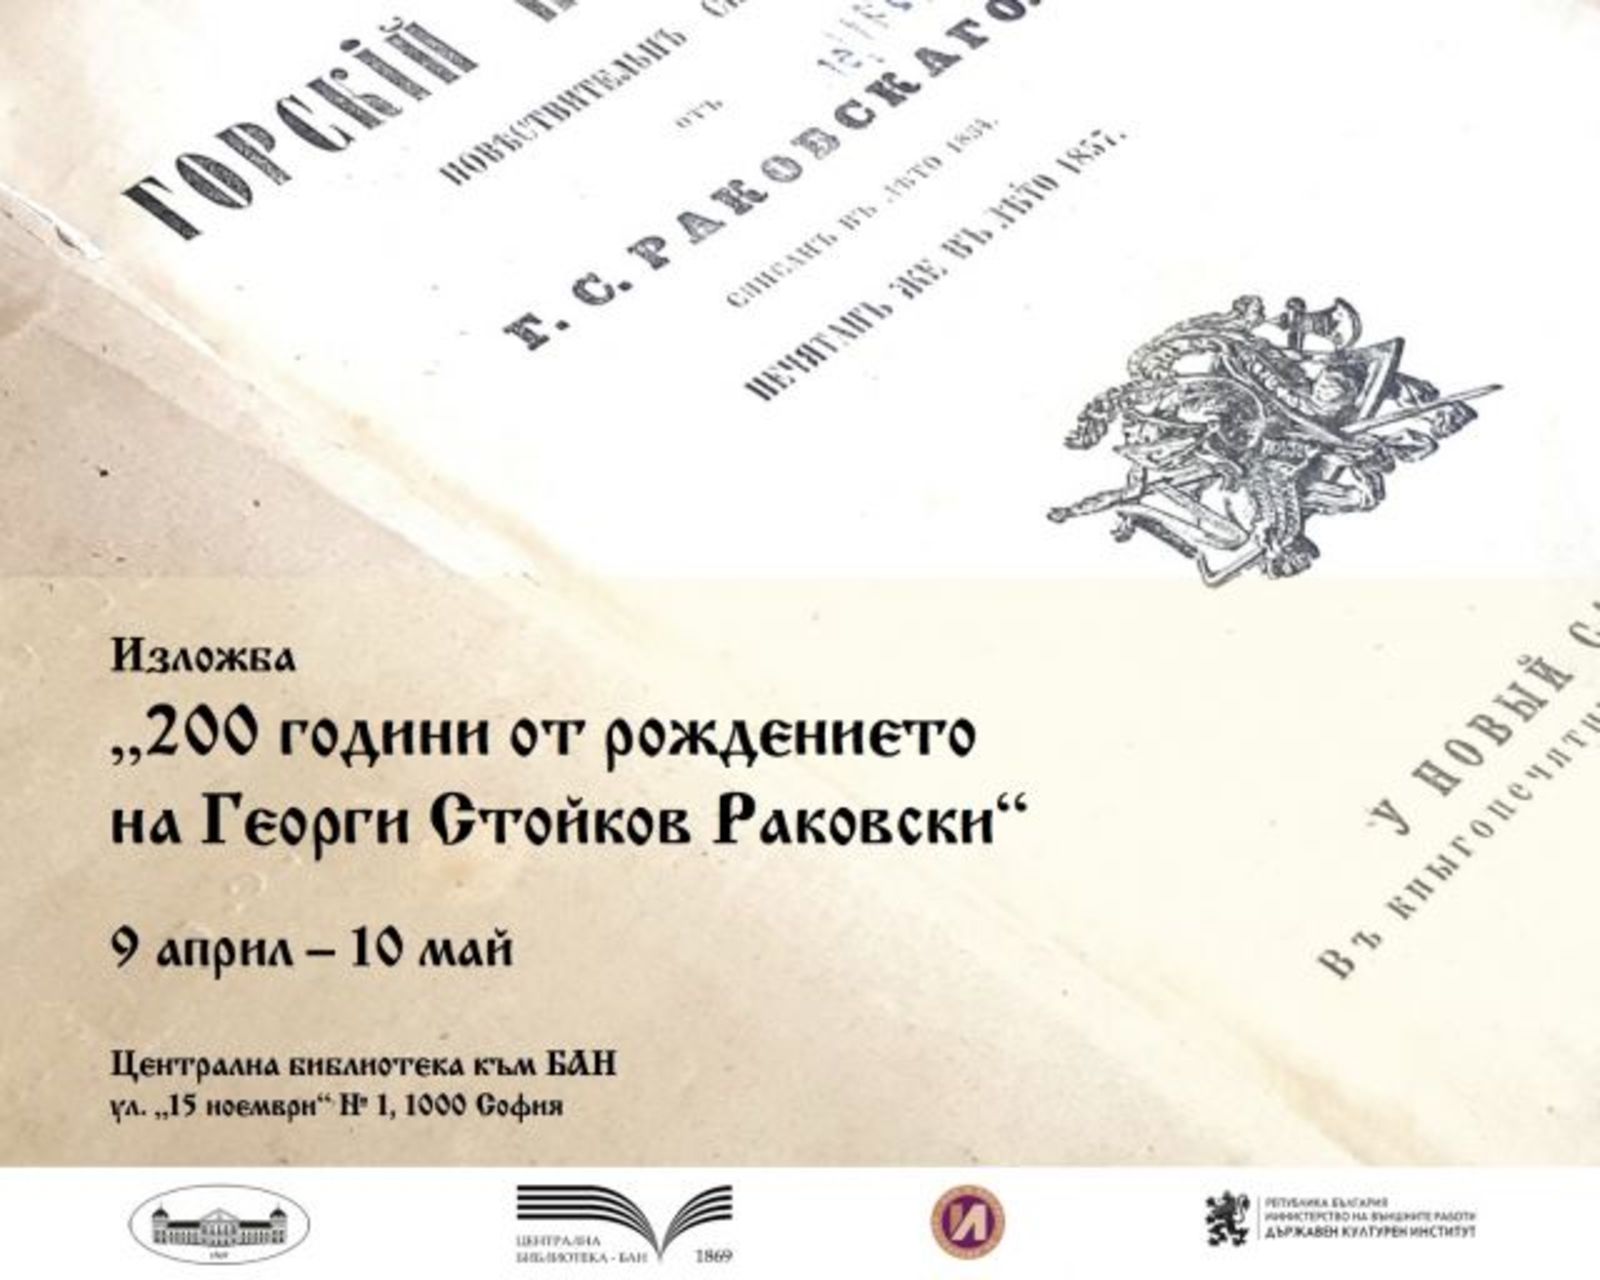 Събитие по повод 200 години от рождението на Георги Стойков Раковски в сътрудничество с Държавния културен институт